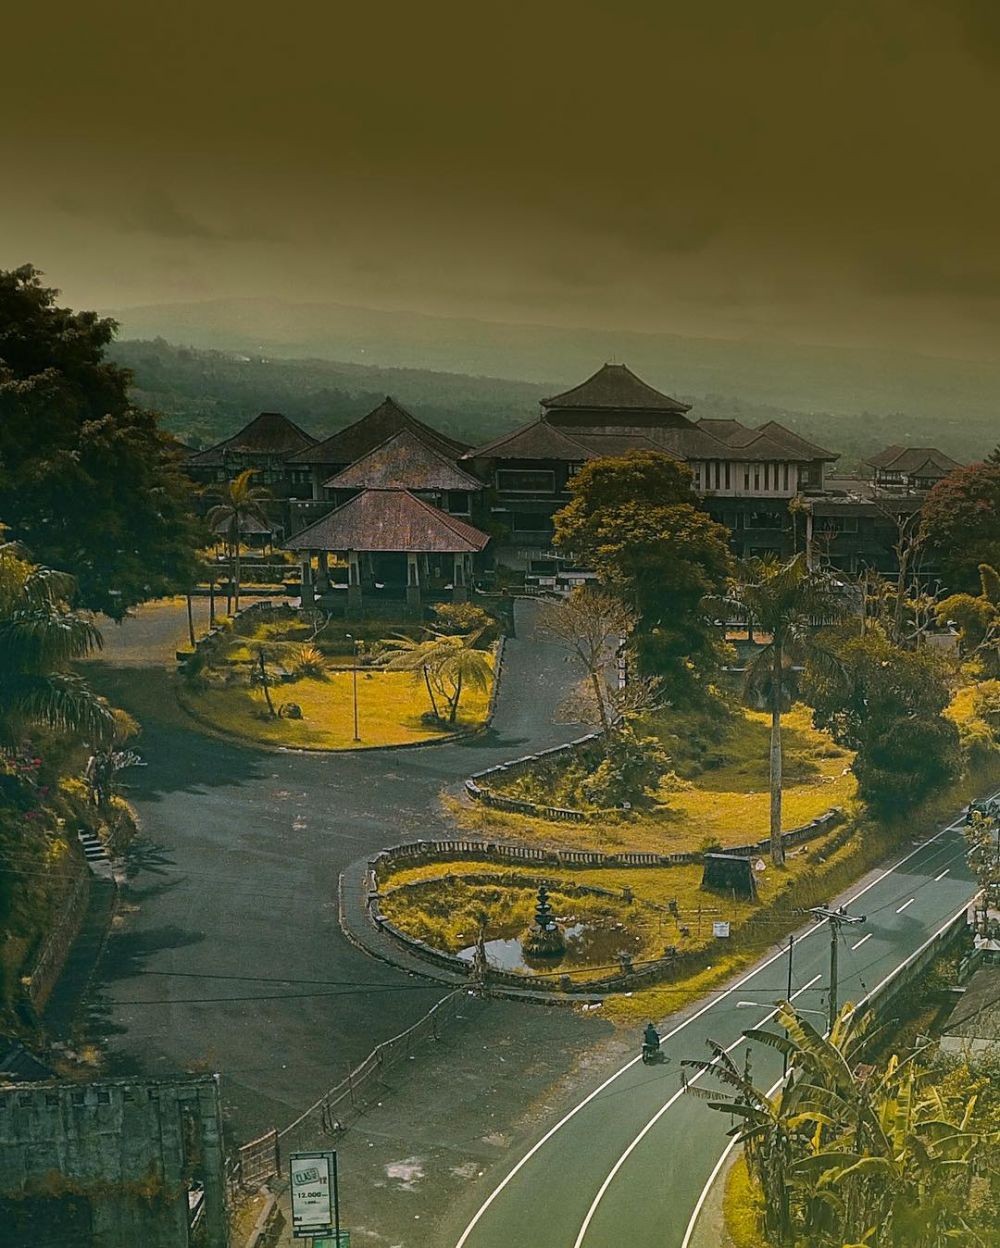 10 Wisata Horor Bali Yang Cocok Untuk Kamu Pecinta Dunia Spiritual 8